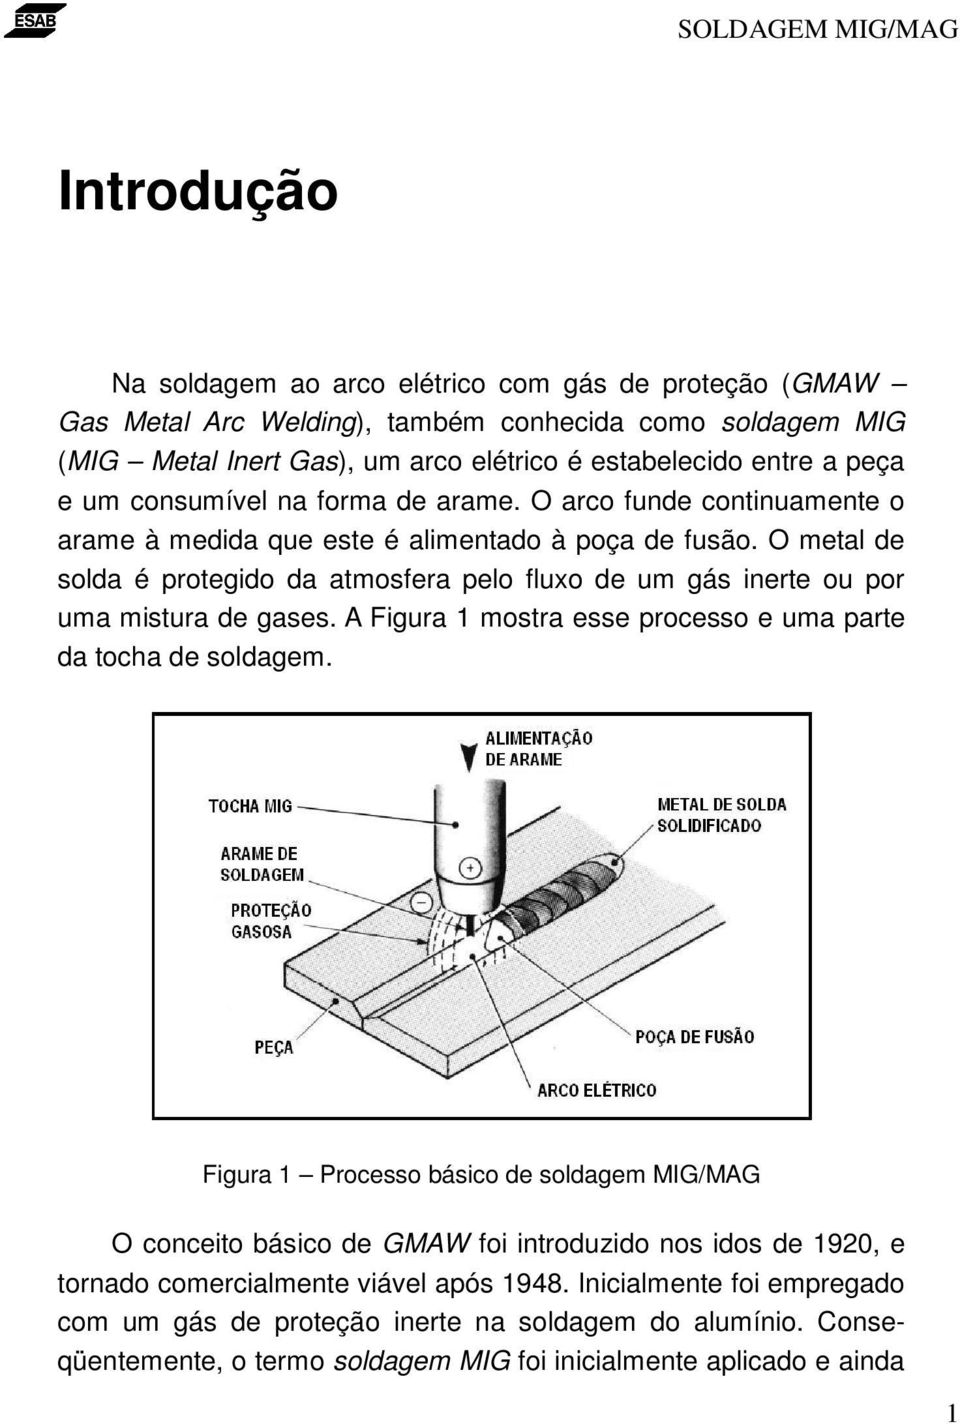 O metal de solda é protegido da atmosfera pelo fluxo de um gás inerte ou por uma mistura de gases. A Figura 1 mostra esse processo e uma parte da tocha de soldagem.